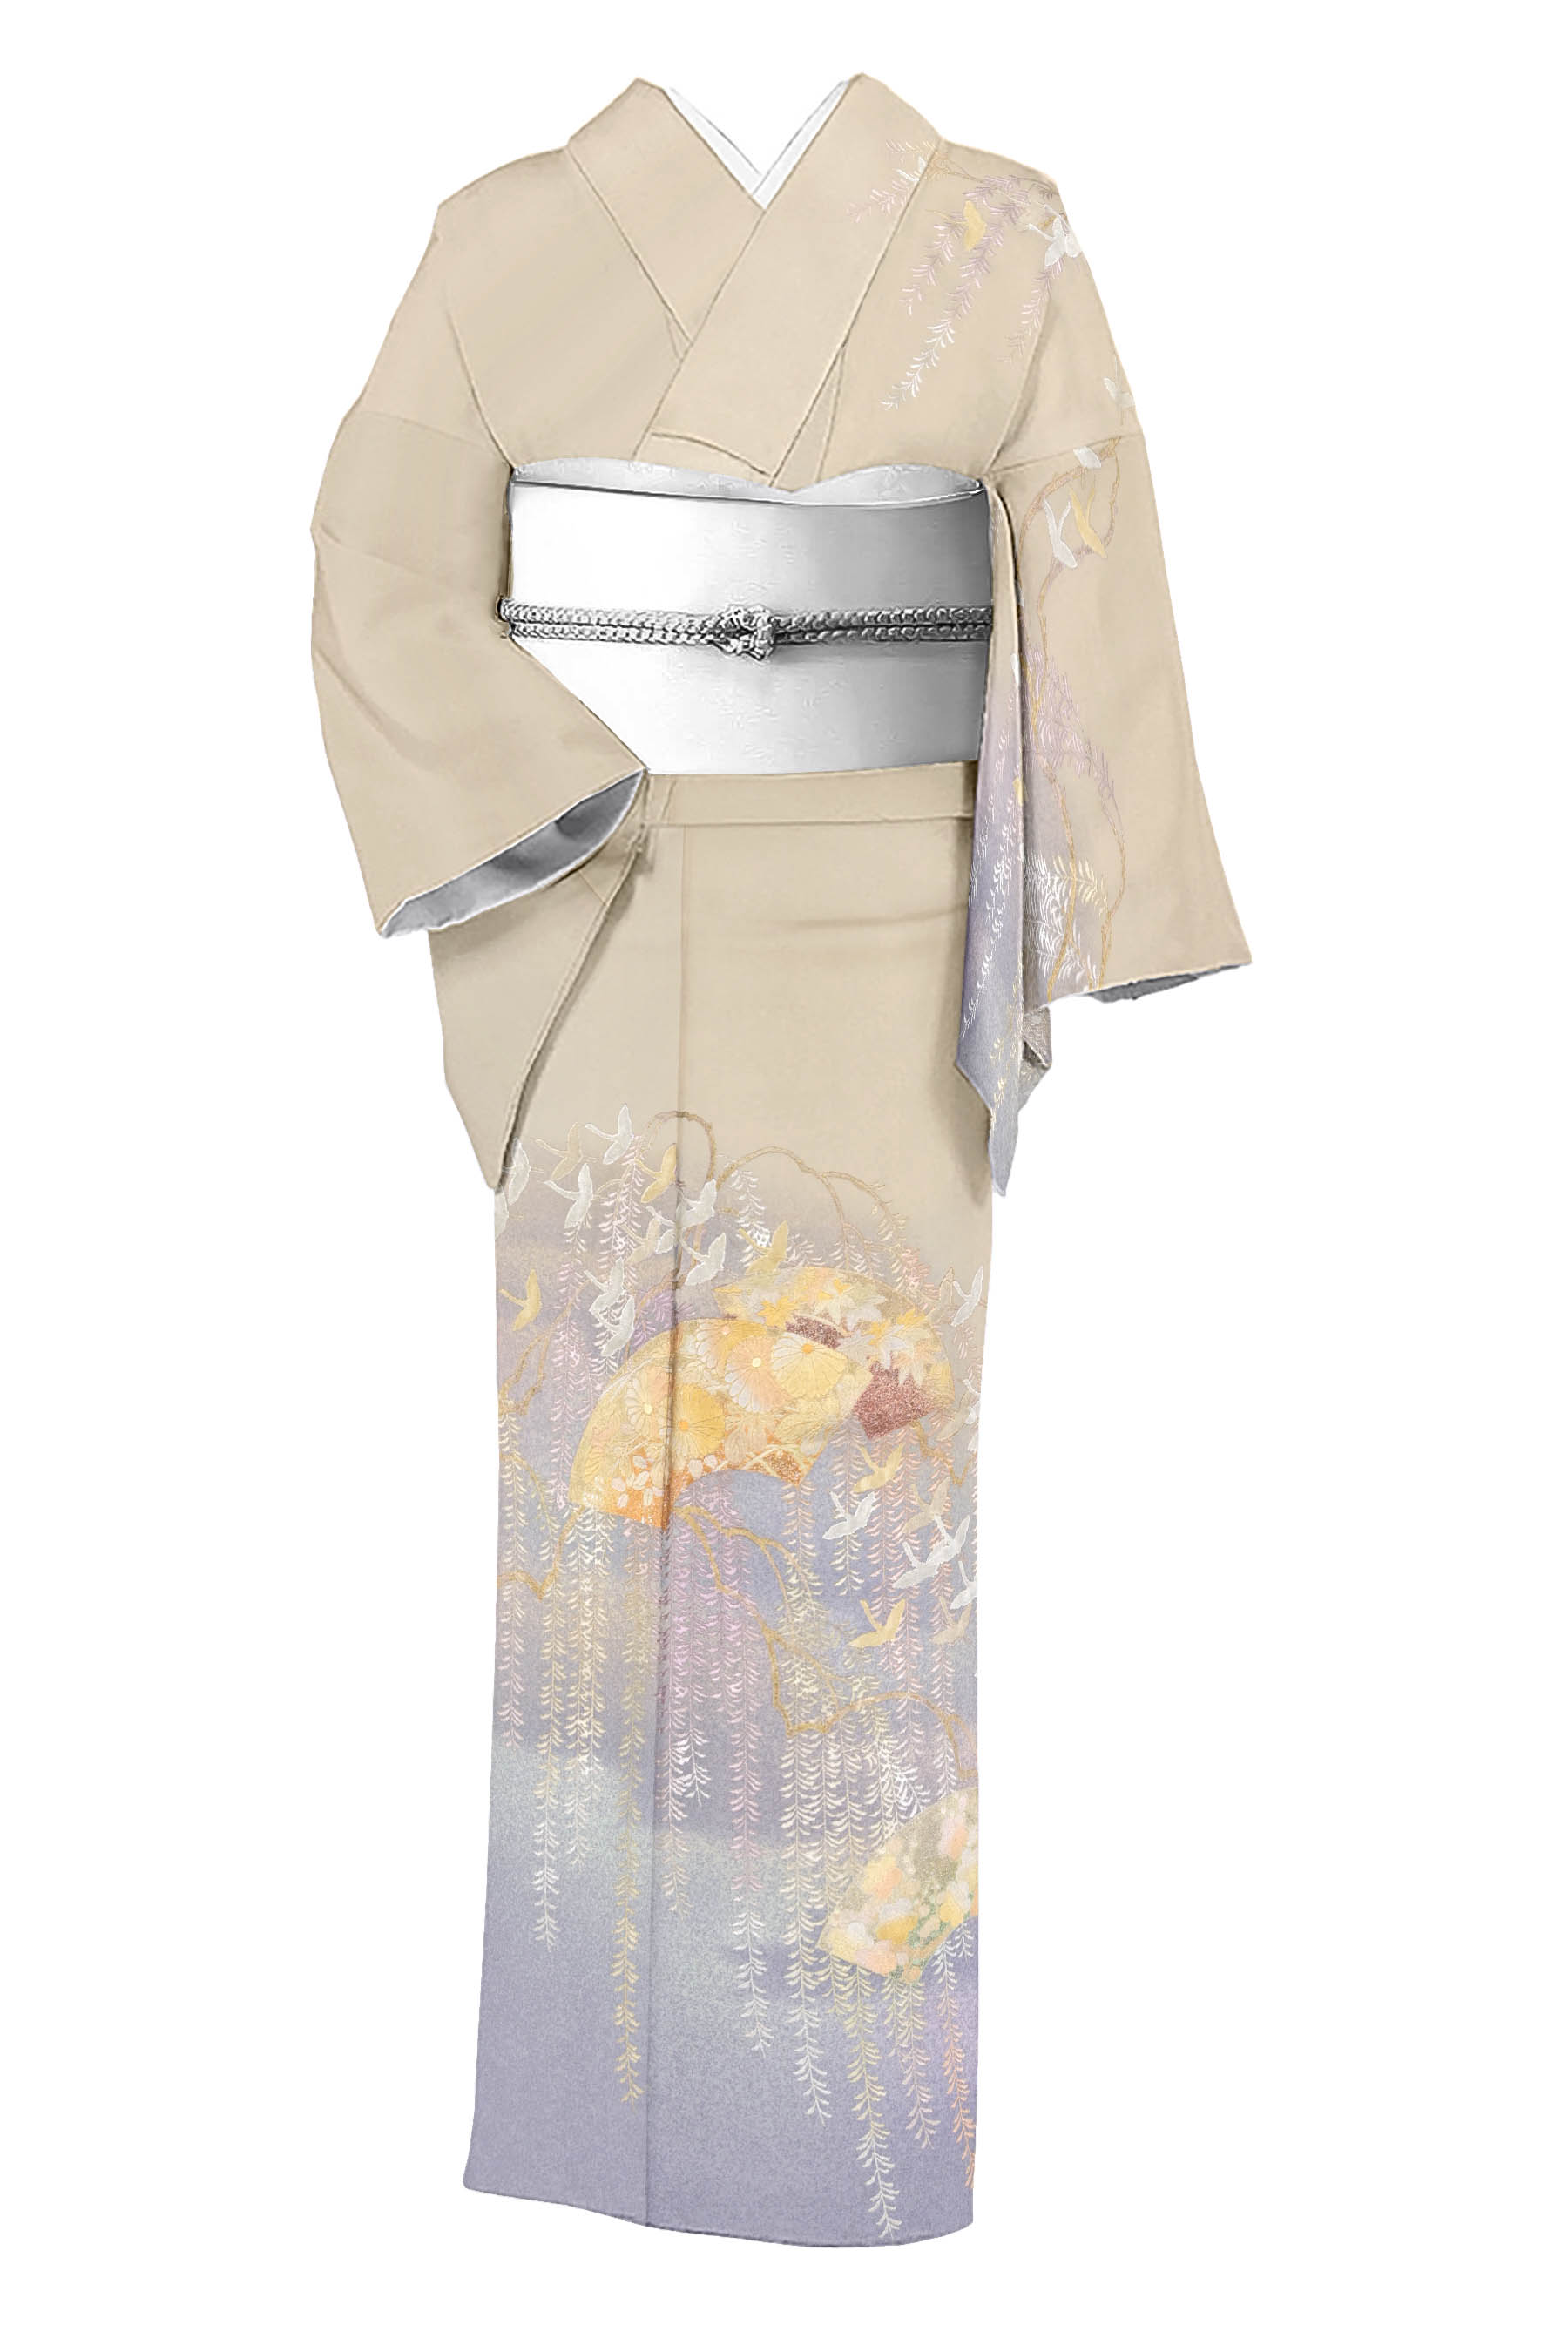 和田光正の着物・帯の一覧|京都きもの市場【日本最大級の着物通販 